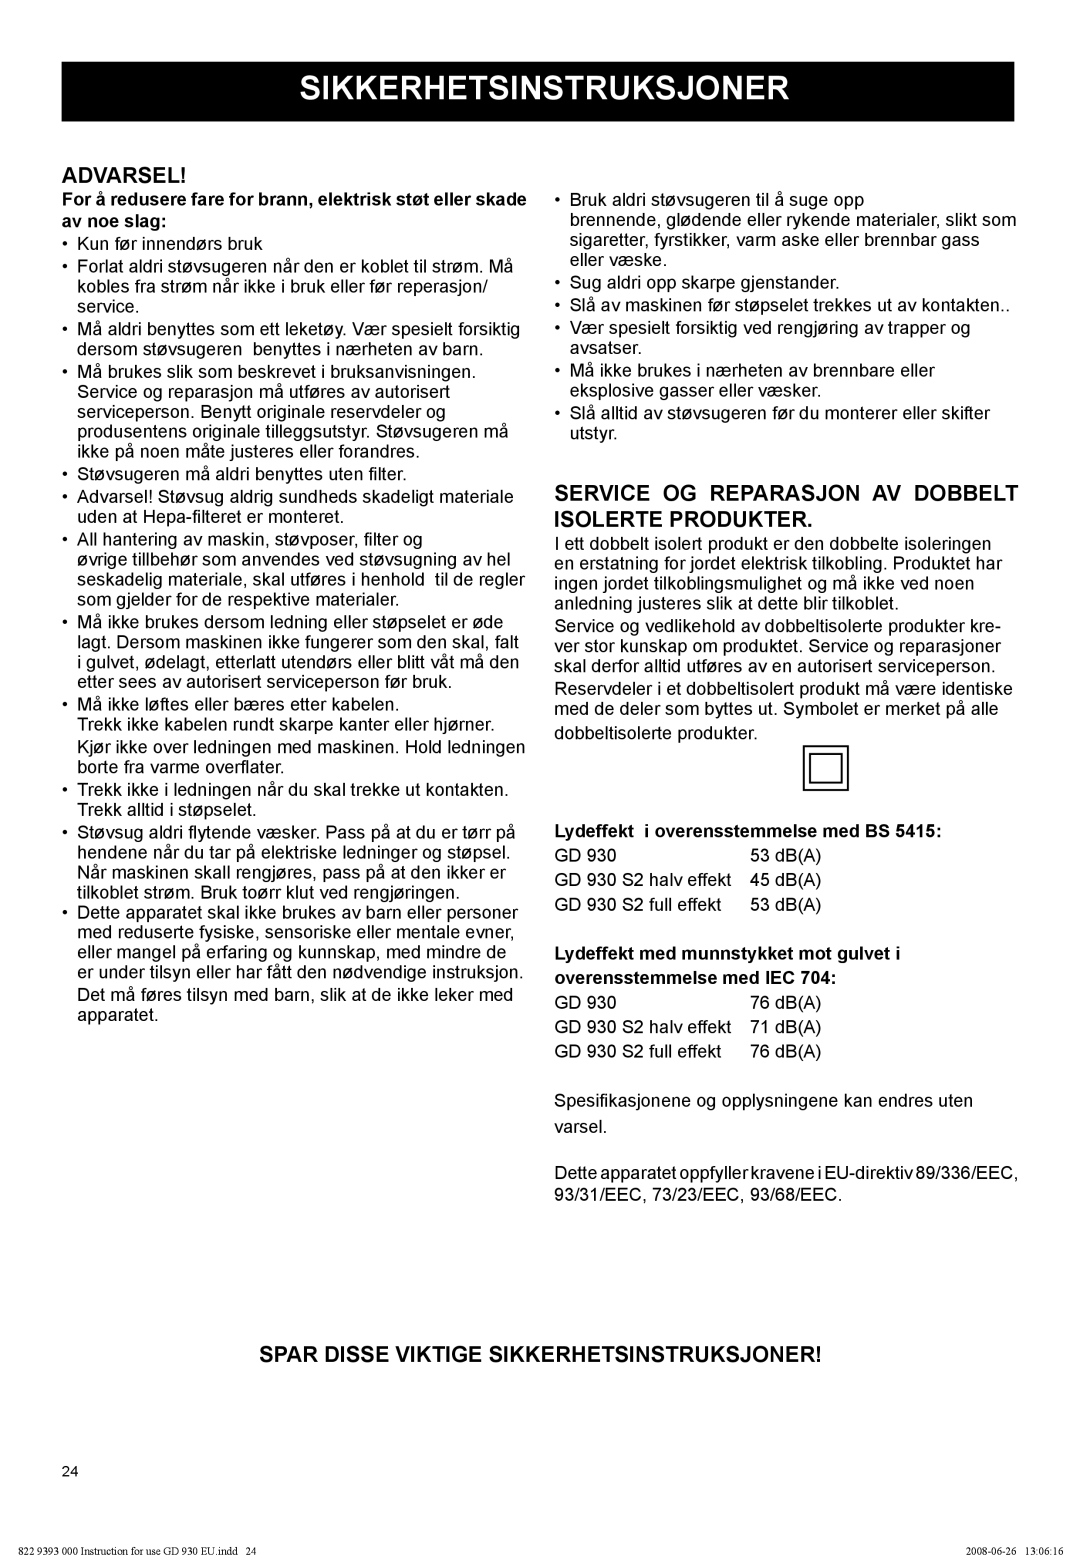 Nilfisk-Advance America GD 930S2 manual Advarsel, Spar Disse Viktige Sikkerhetsinstruksjoner 